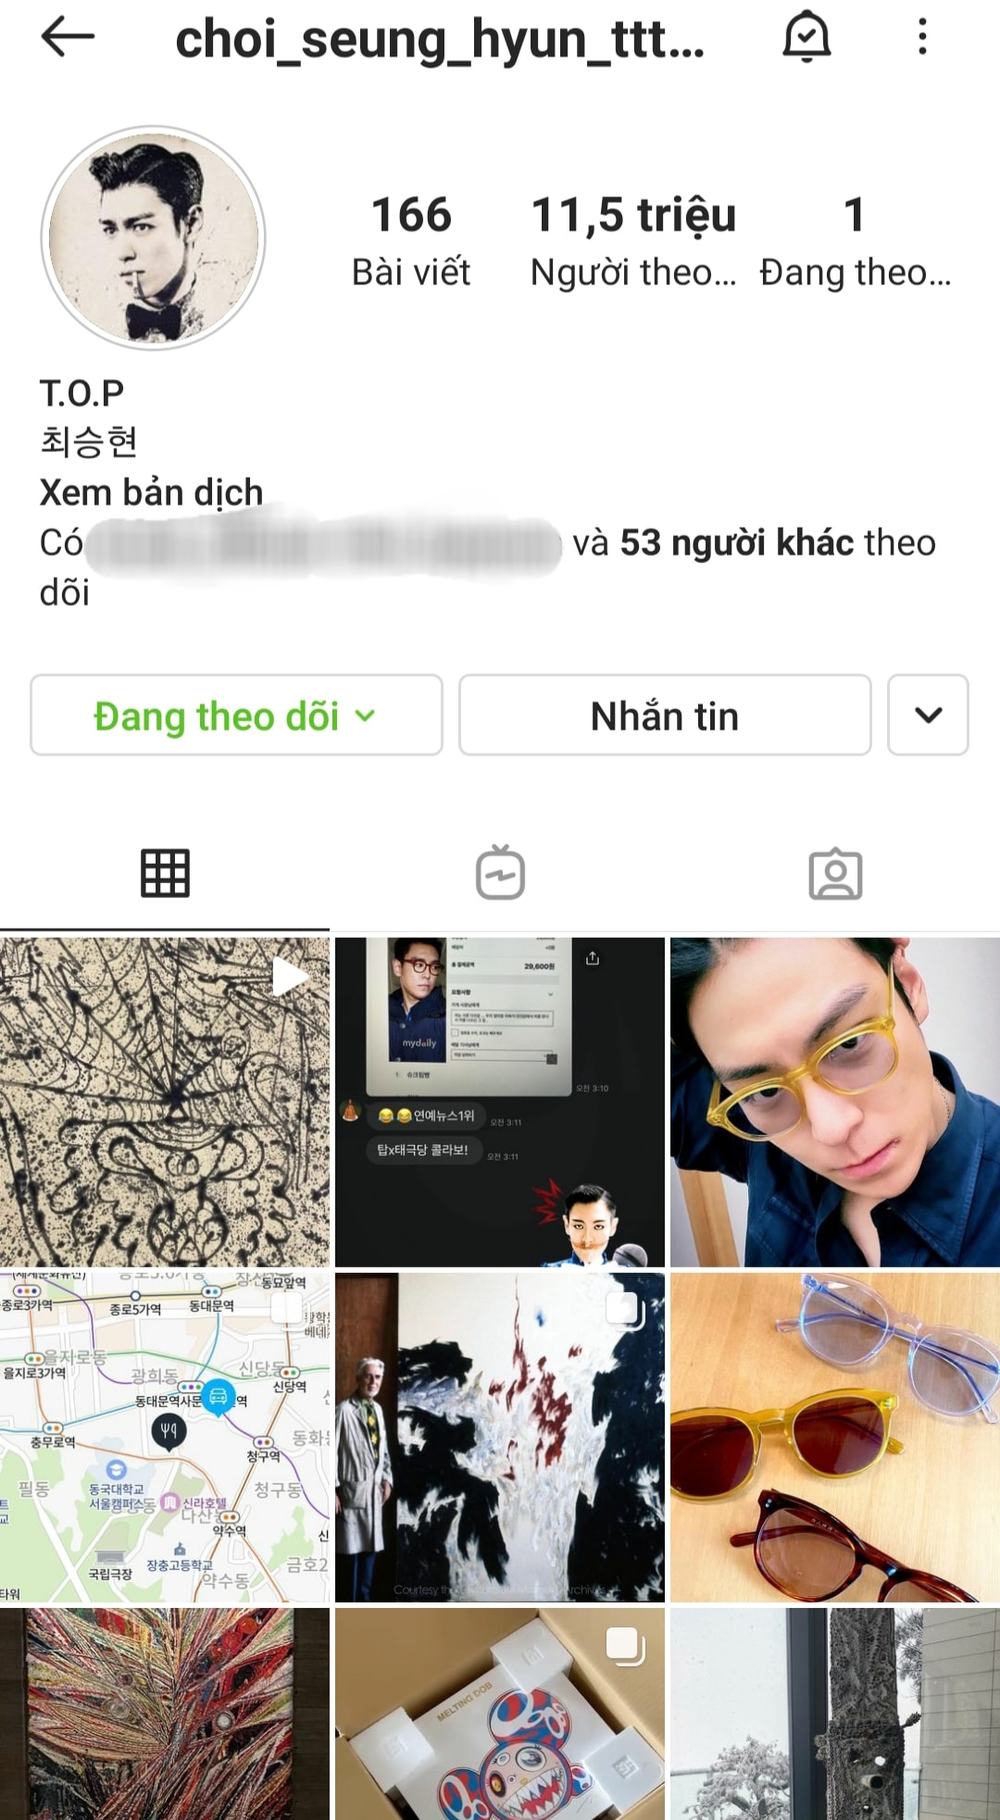 TOP BIGBANG nhập hội 'chỉ follow mình em', người được theo dõi rất đặc biệt - Ảnh 1